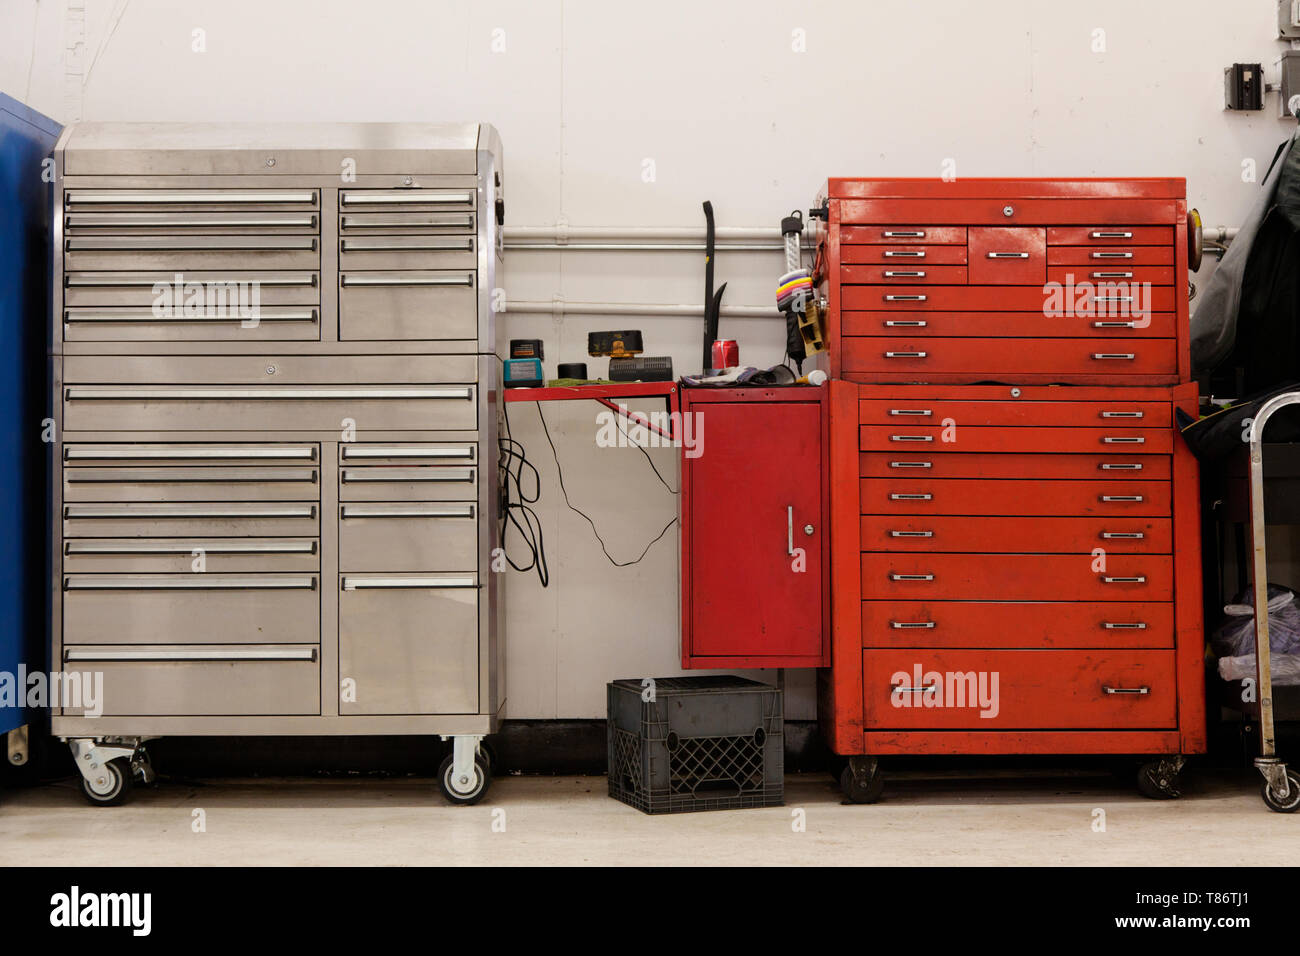 Werkzeug-Kisten In einer Kfz Werkstatt Stockfotografie - Alamy